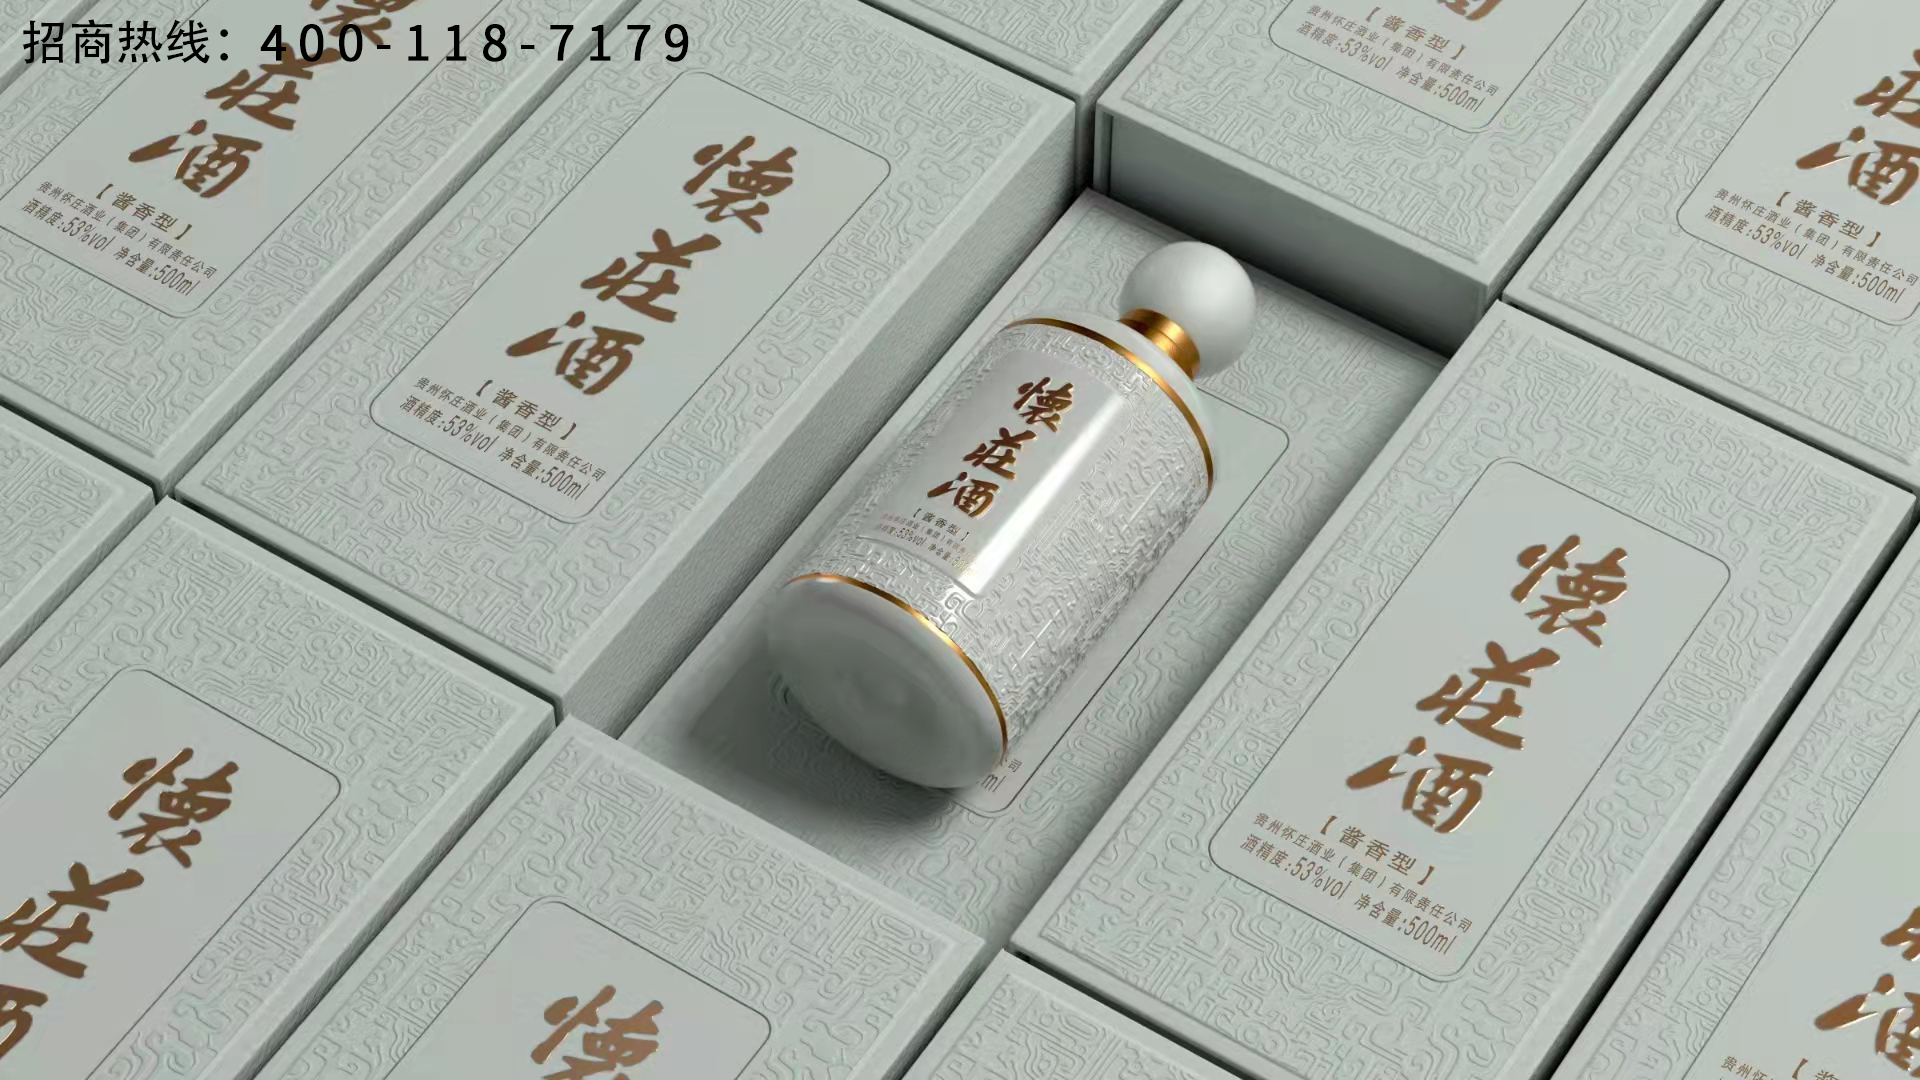 怀庄酒核心大单品 12亿巨资打造中国酱酒第二瓶大单品